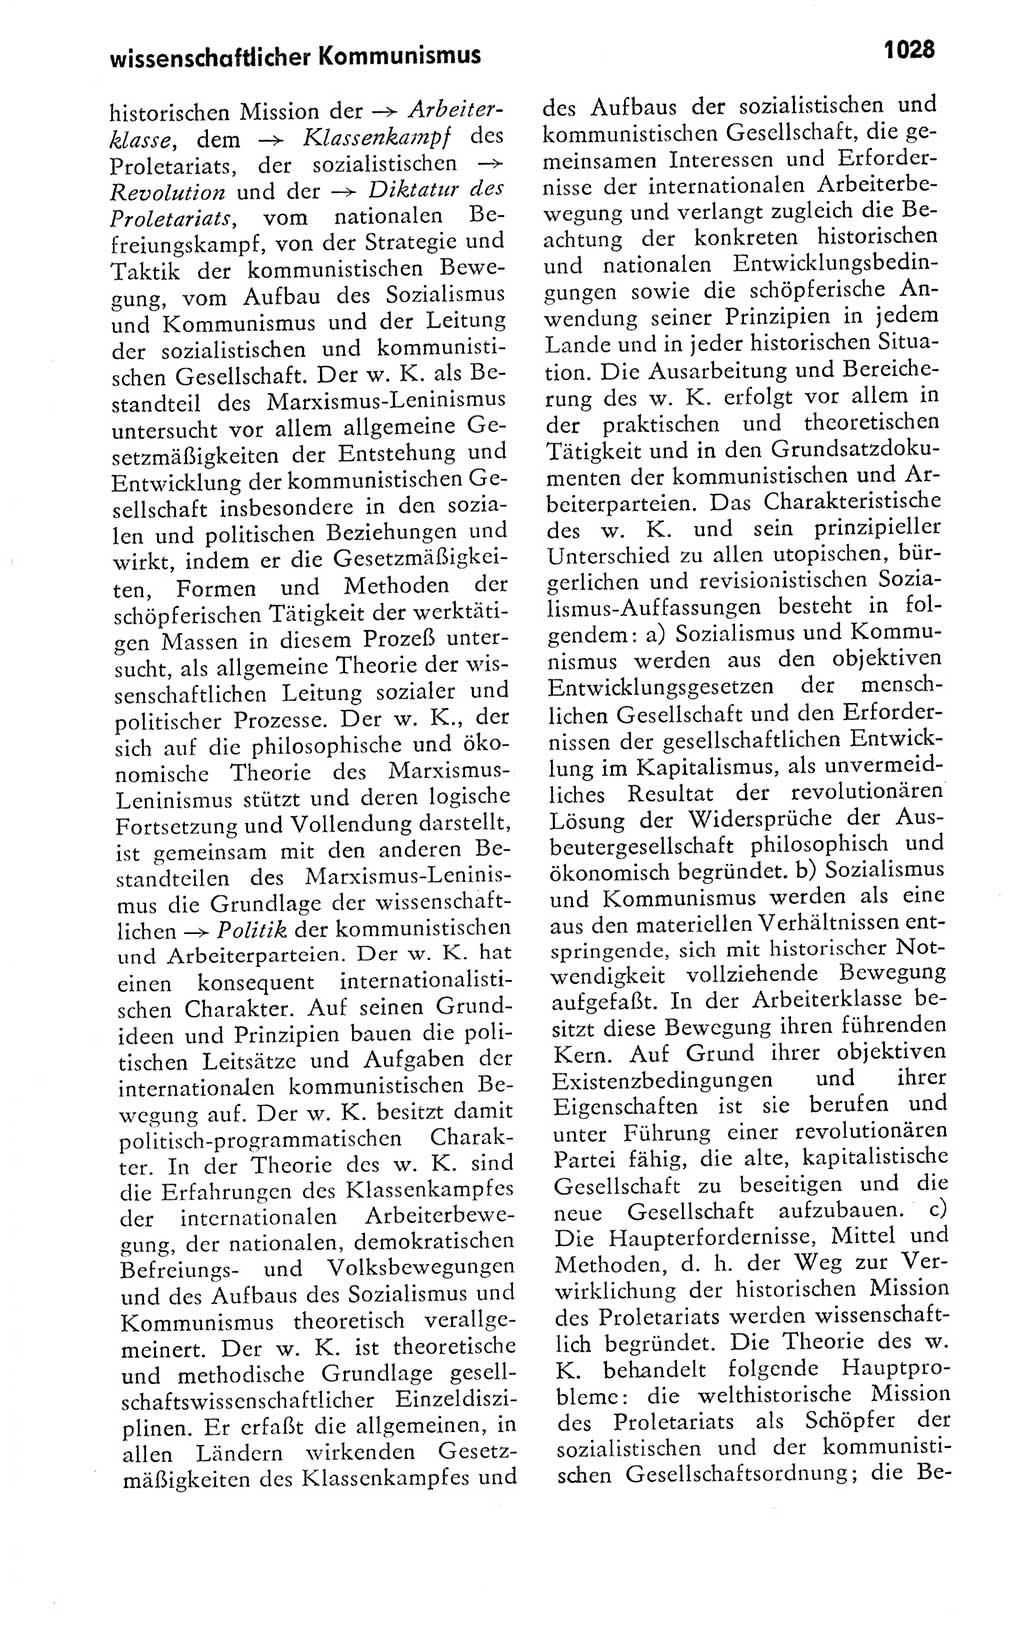 Kleines politisches Wörterbuch [Deutsche Demokratische Republik (DDR)] 1978, Seite 1028 (Kl. pol. Wb. DDR 1978, S. 1028)